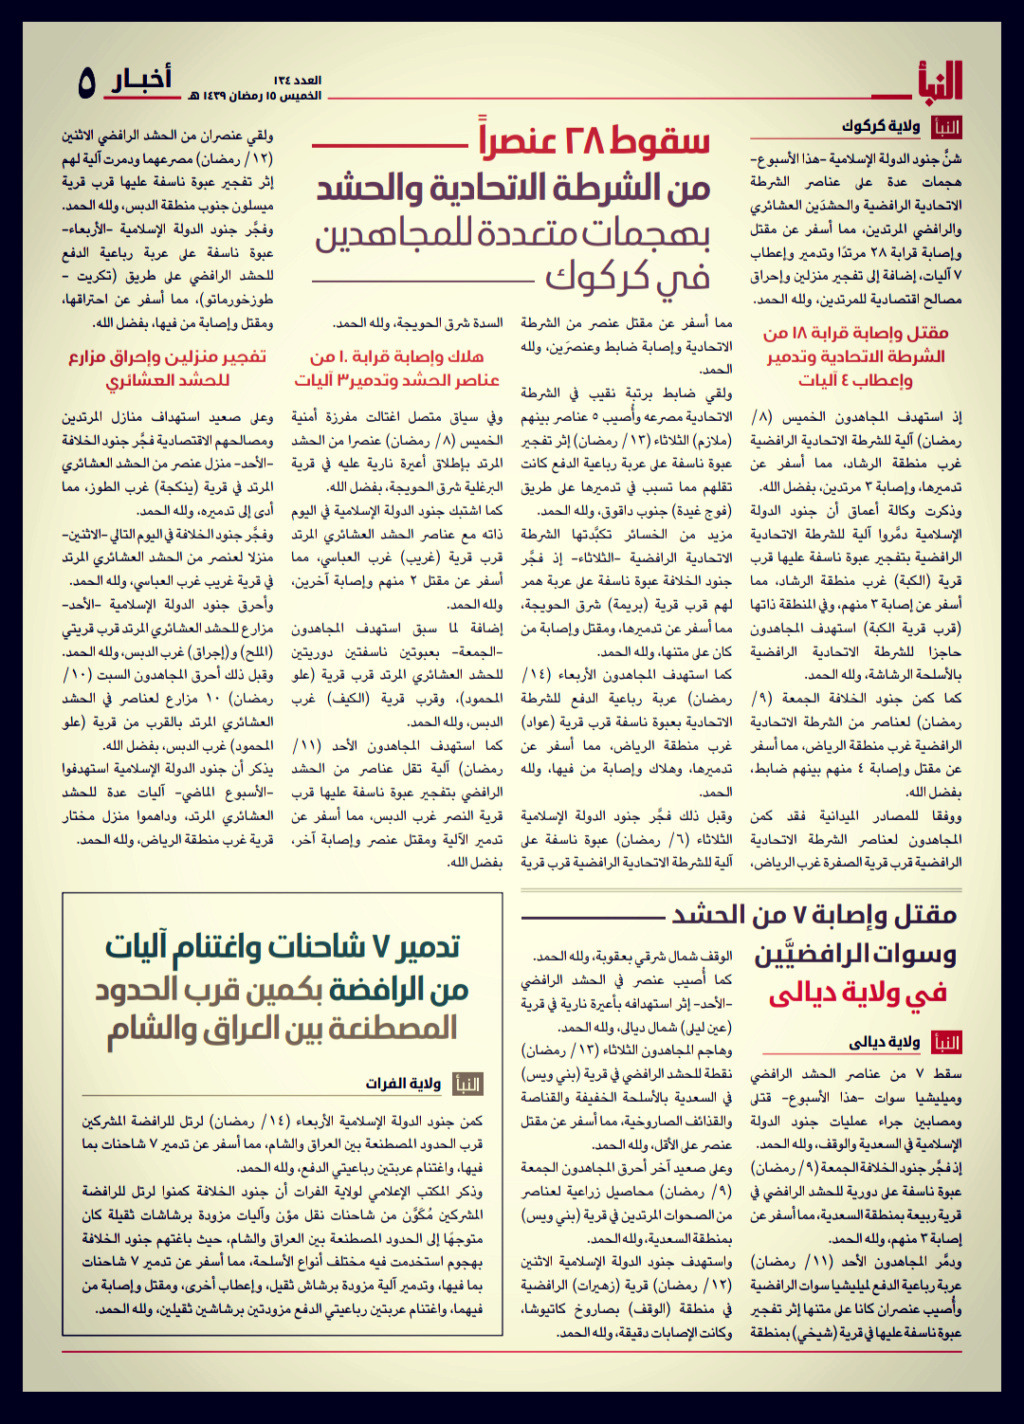 صحيفة النبأ - الاصدارات القديمة  - صفحة 2 8ad32e10